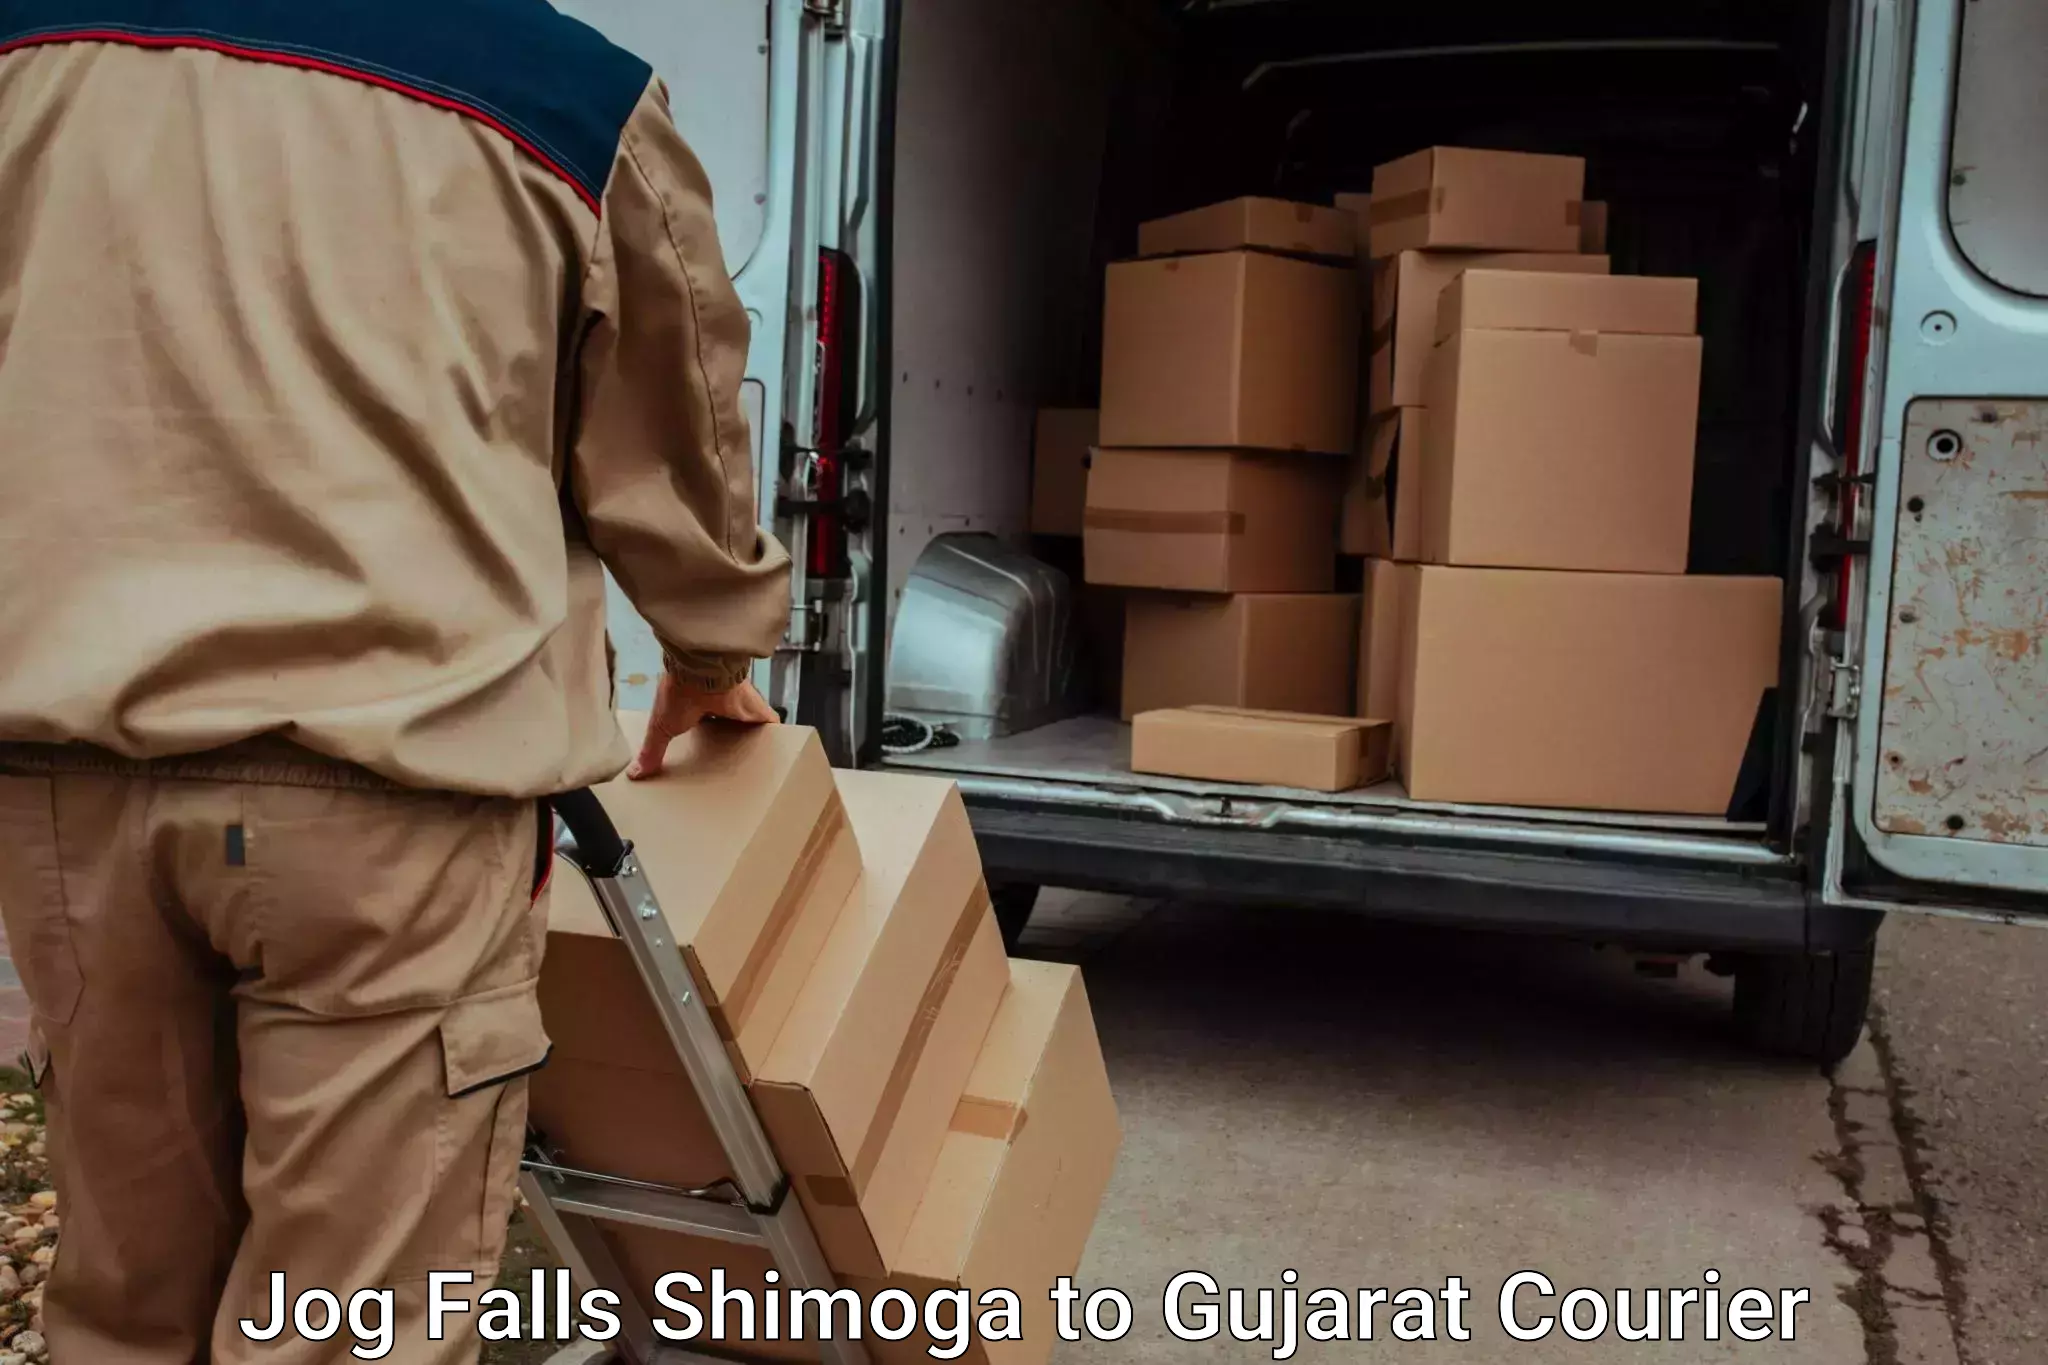 Skilled furniture movers Jog Falls Shimoga to Bhesan